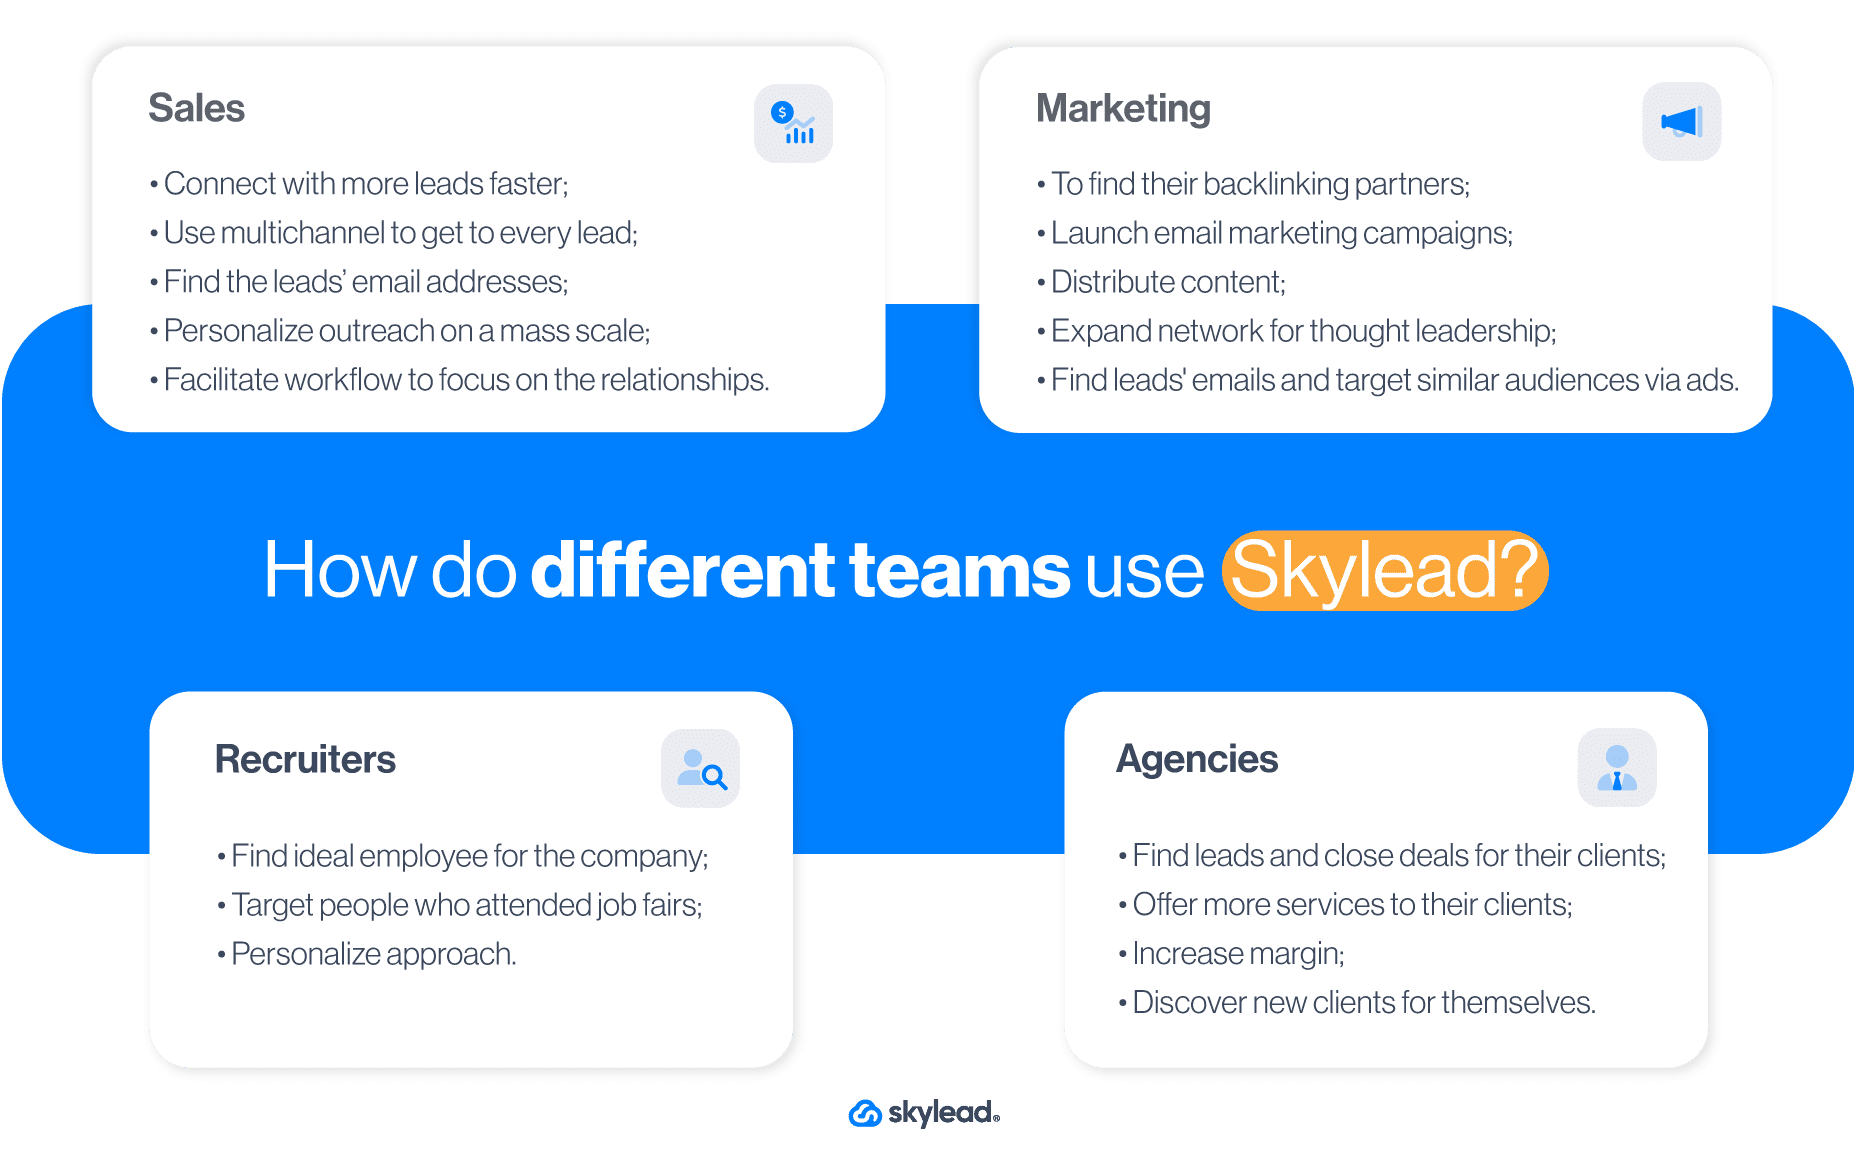 Skylead use cases according to company teams